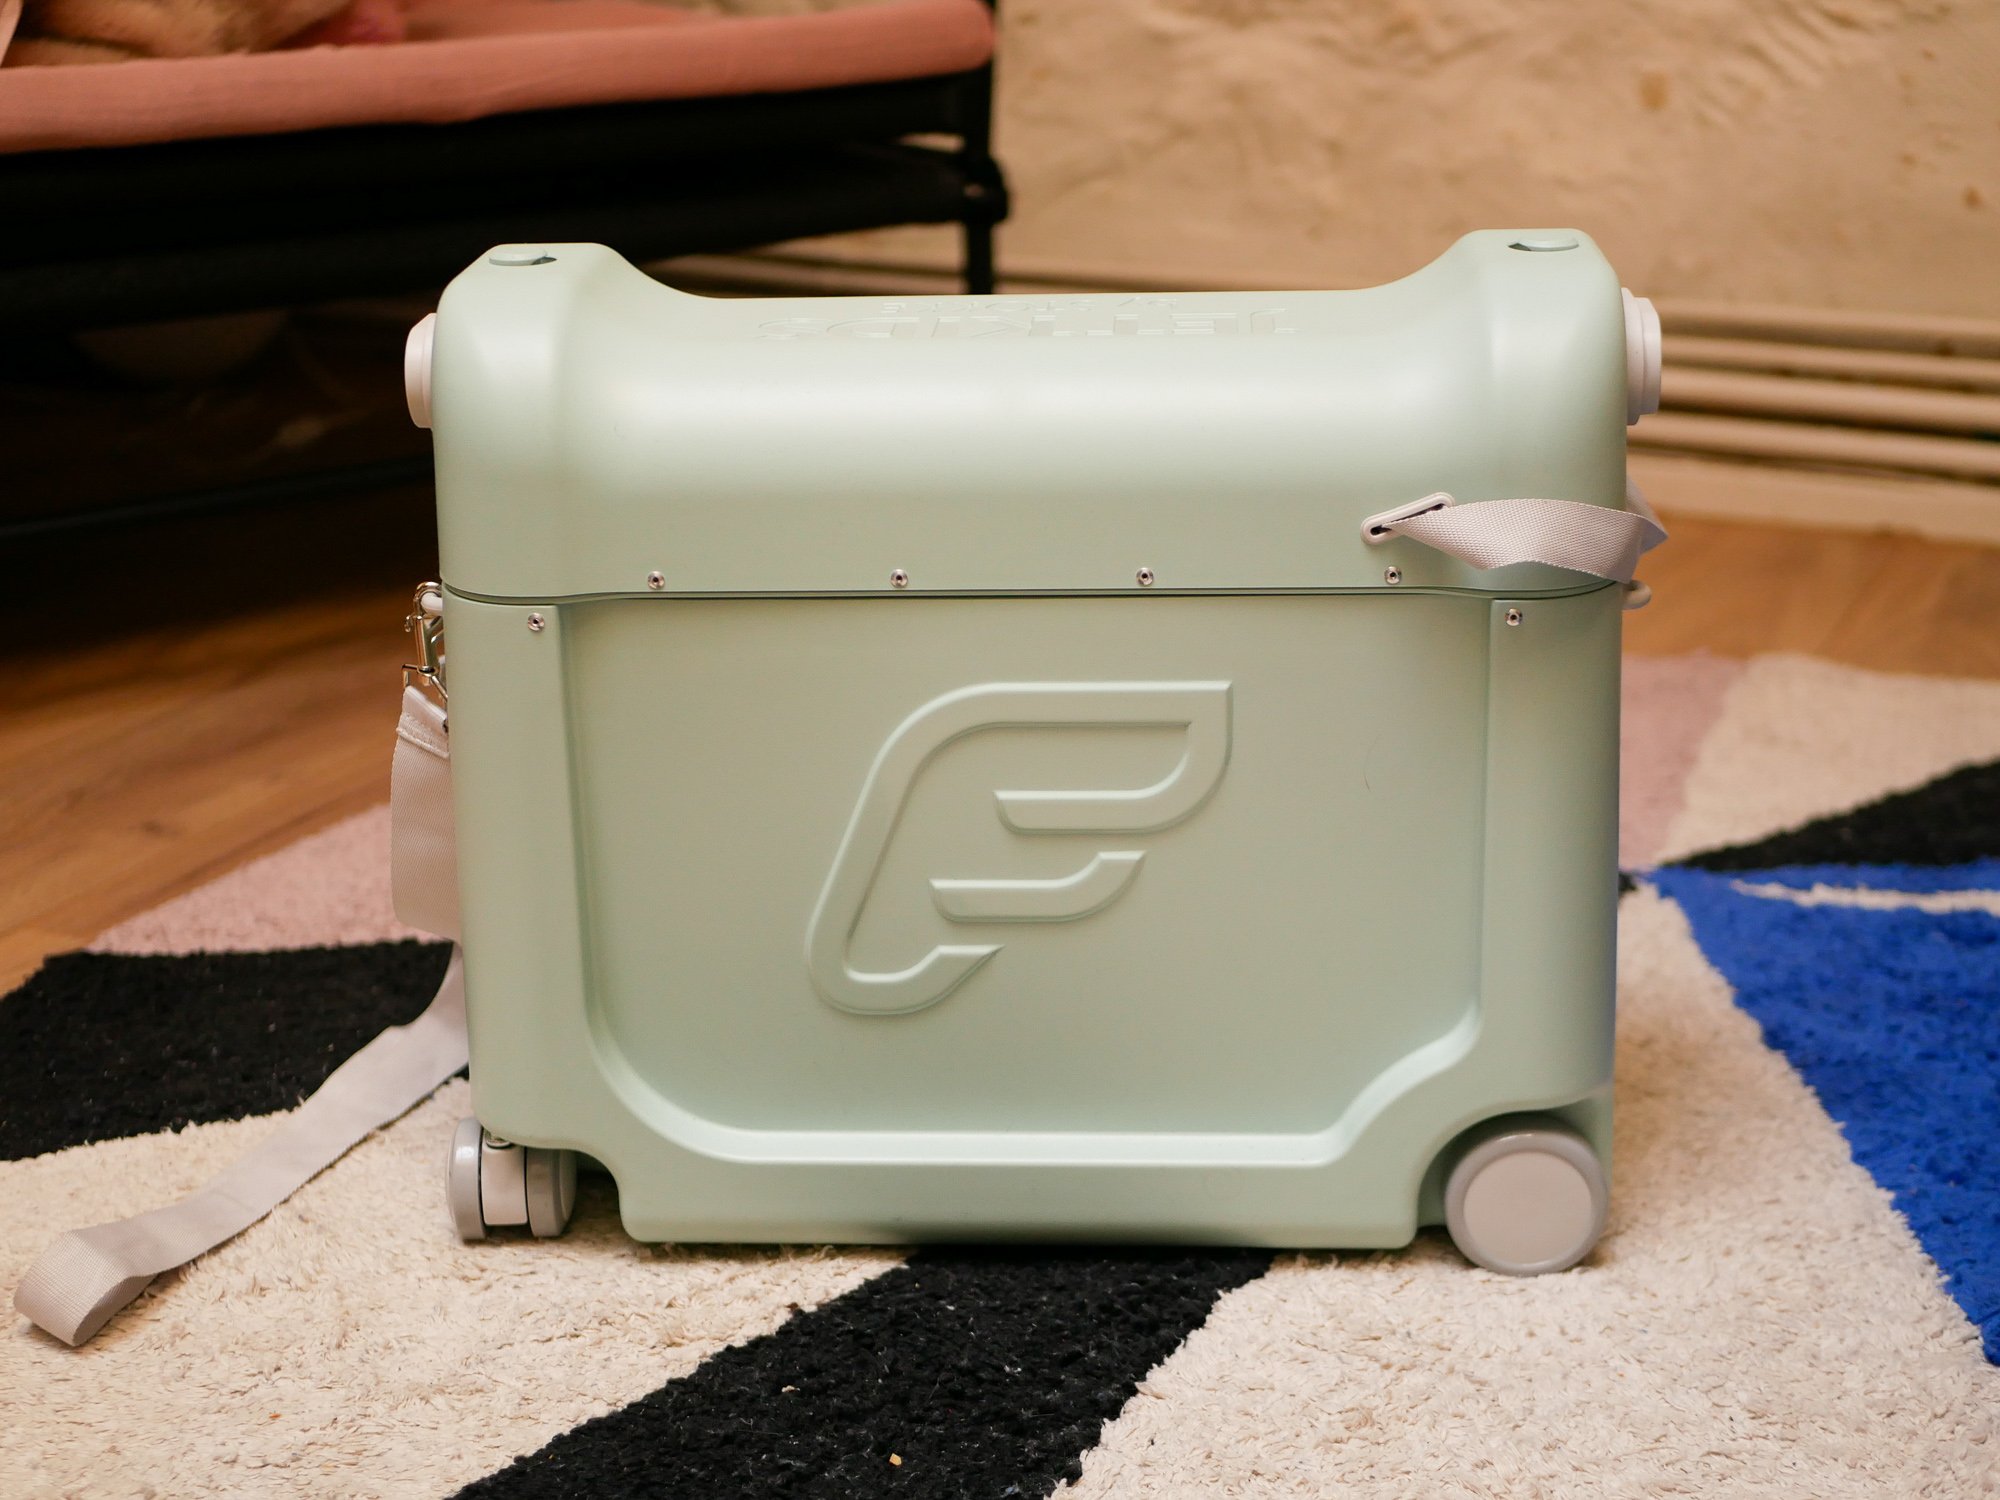 valise jet kids bedbox x stokke / le contenu de la valise pour l'avion